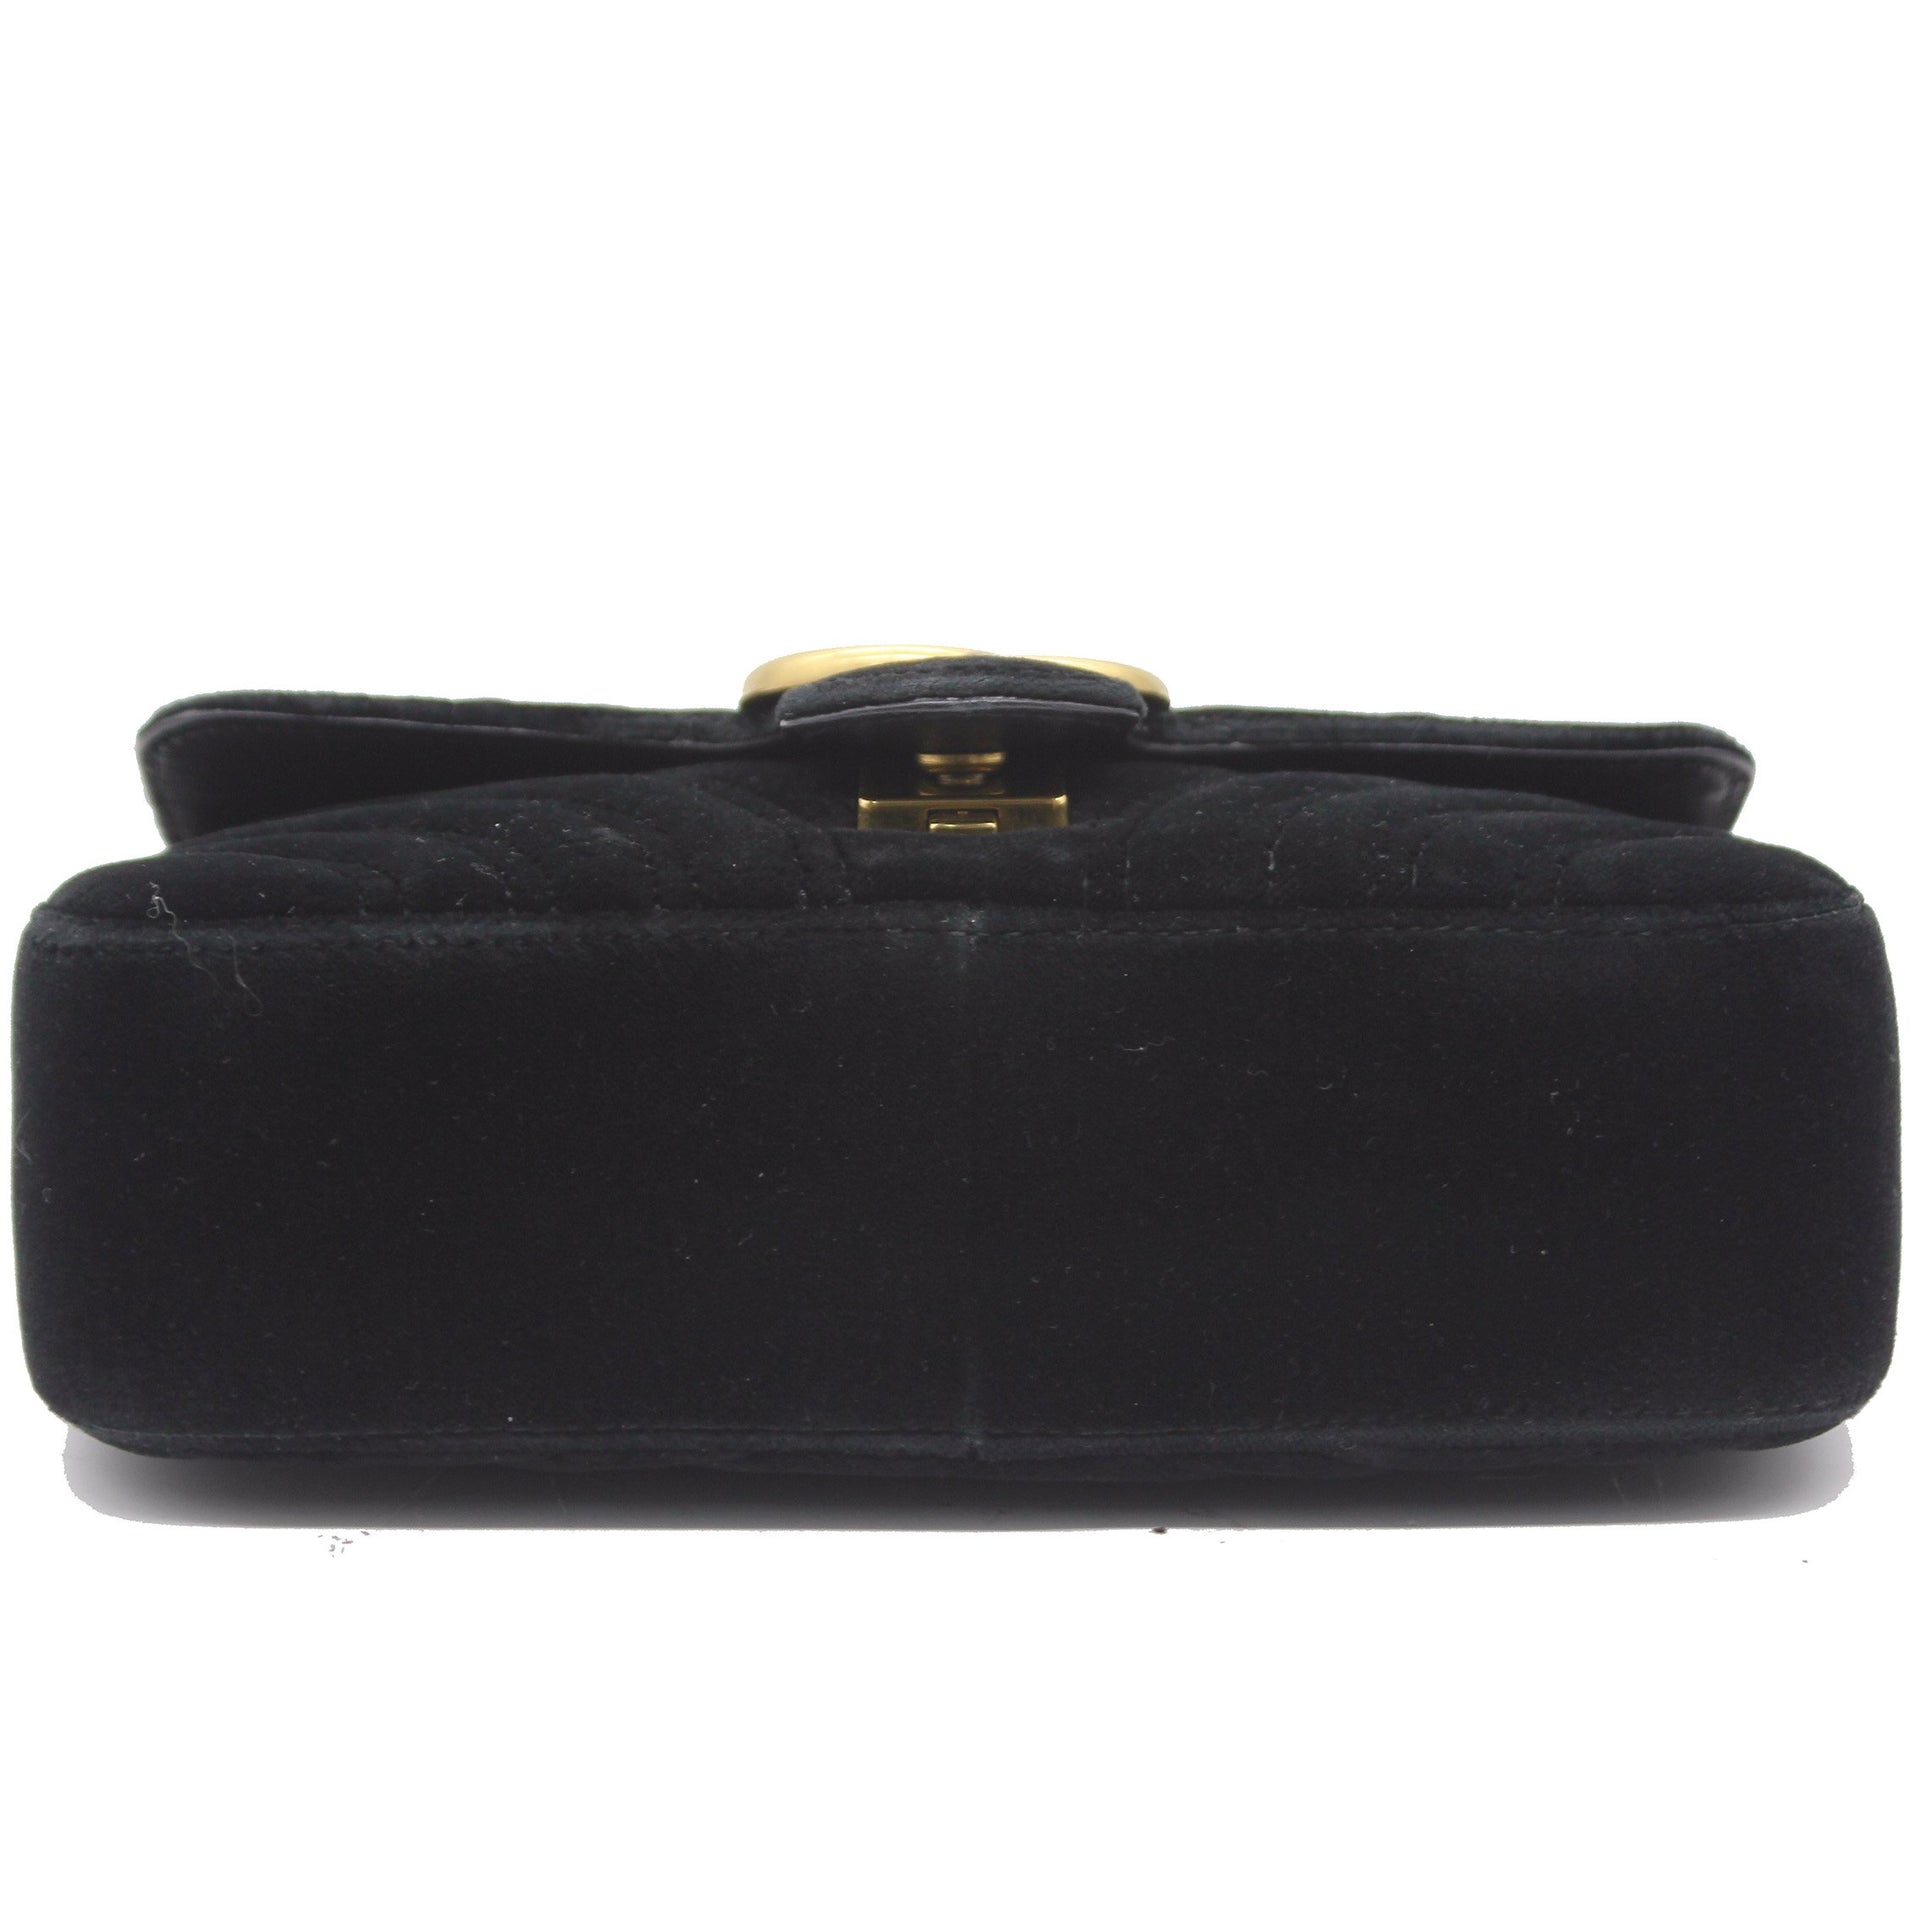 Marmont Matelassé Mini Velvet Black Bag